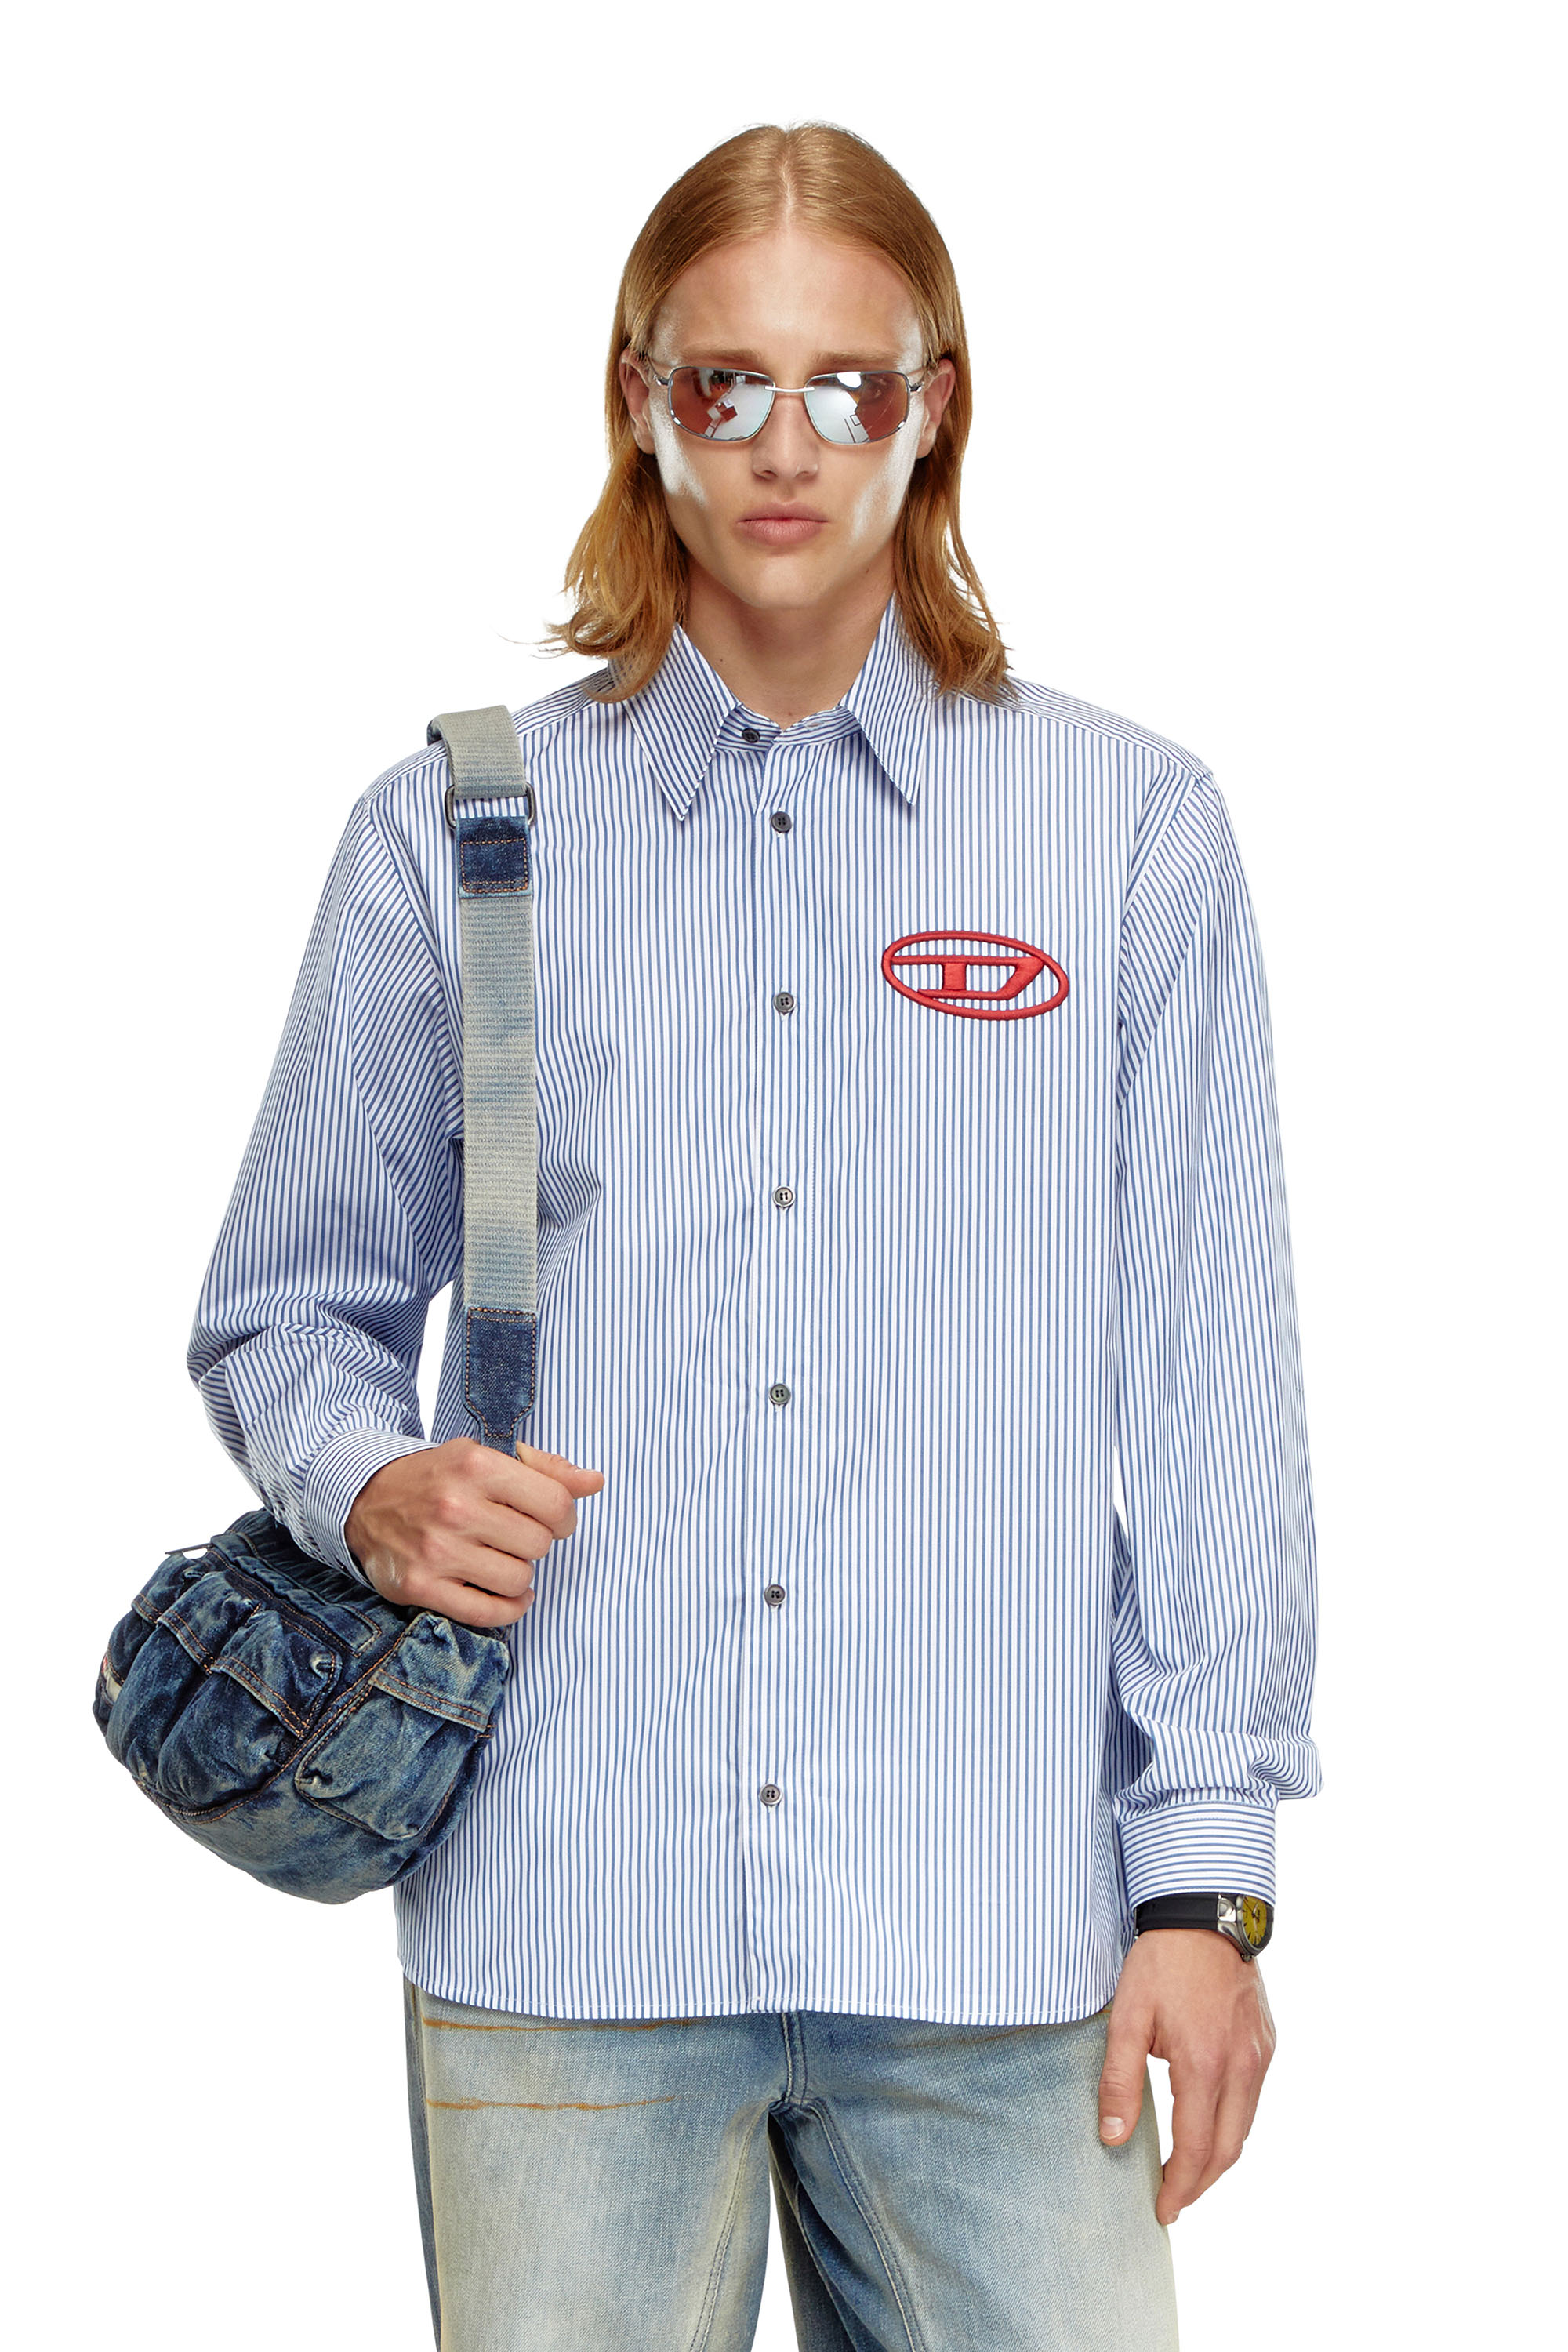 Diesel - S-SIMPLY-E, Hombre Camisa a rayas con bordado Oval D in Azul marino - Image 1